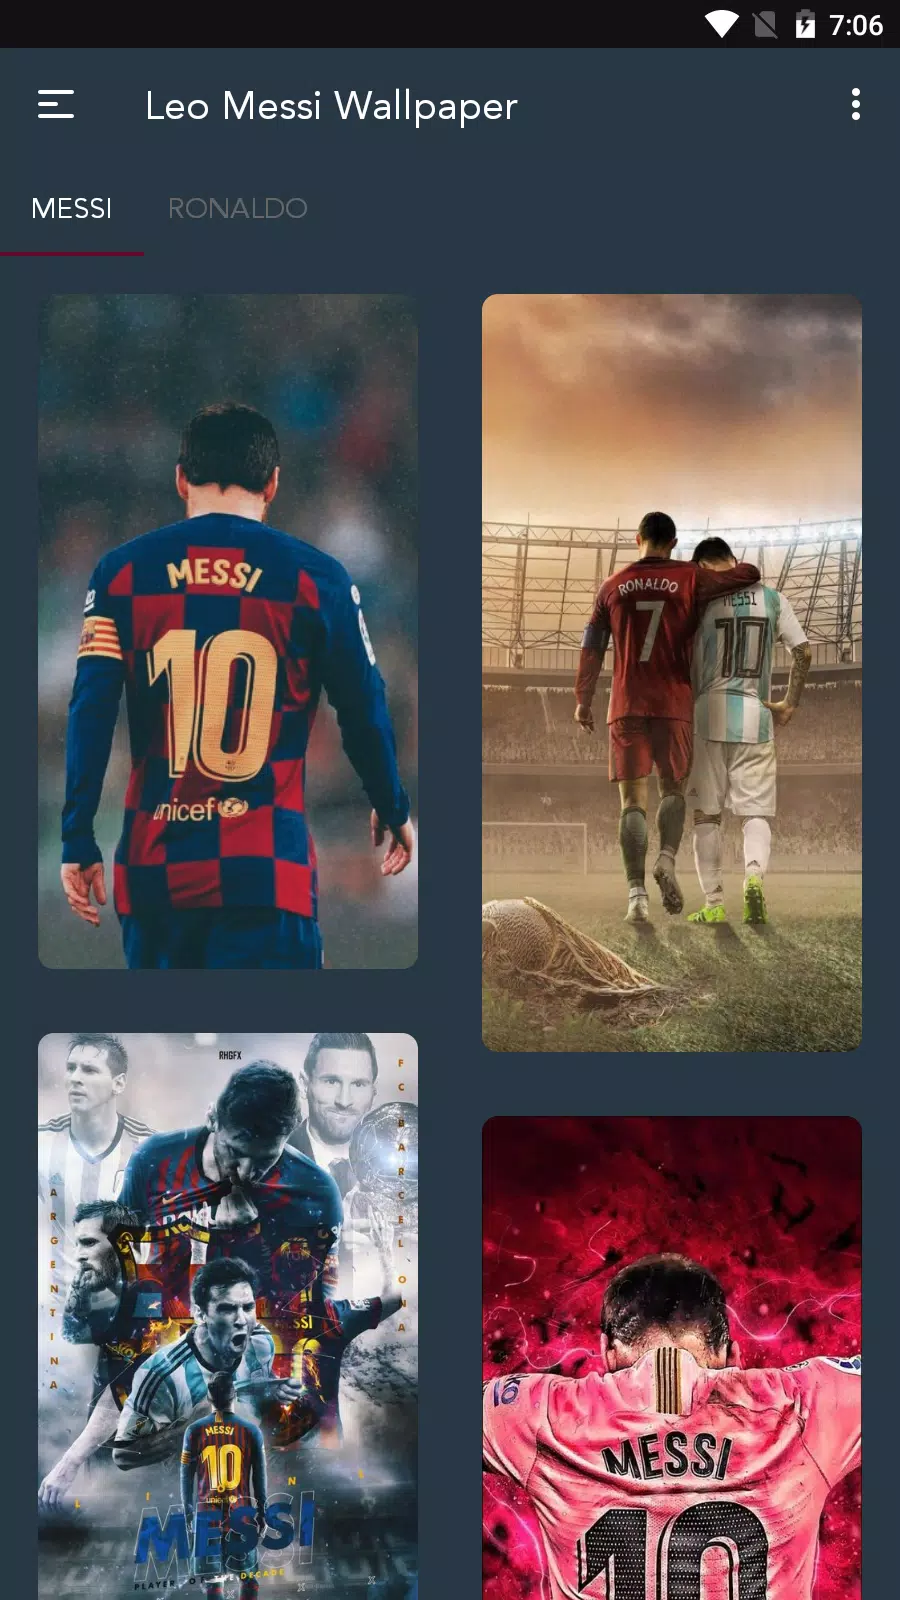 Hãy xem hình nền Leo Messi để ngắm người chơi bóng đá tài năng nhất mọi thời đại, người giành được ba giải Quả bóng vàng liên tiếp từ năm 20014 đến 2016 và đã ghi được hơn 700 bàn thắng cho câu lạc bộ của mình. Bạn không muốn bỏ lỡ cơ hội để trưng bày tình yêu của mình với ngôi sao bóng đá nổi tiếng này.